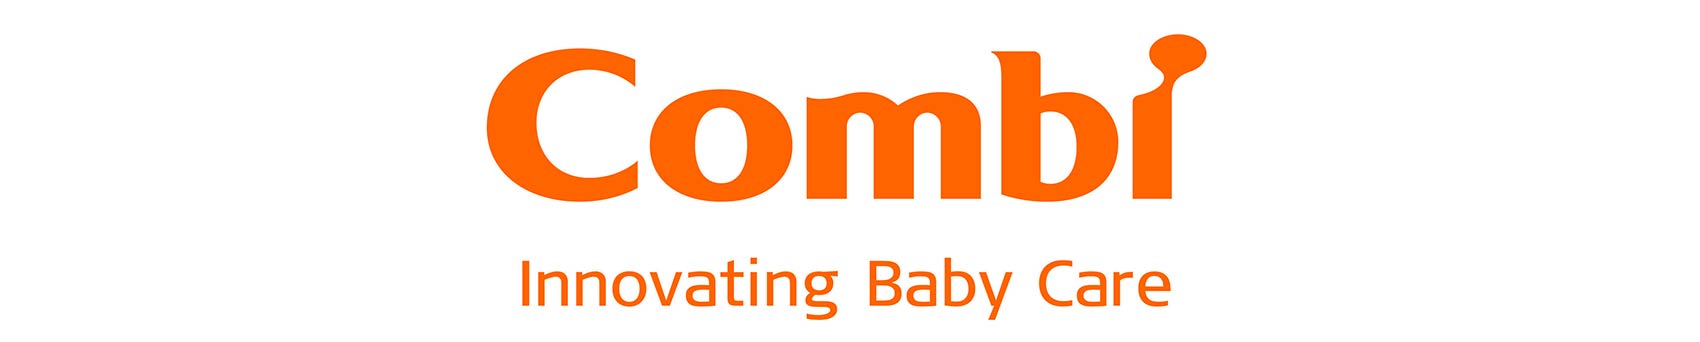 Логотип компании Combi